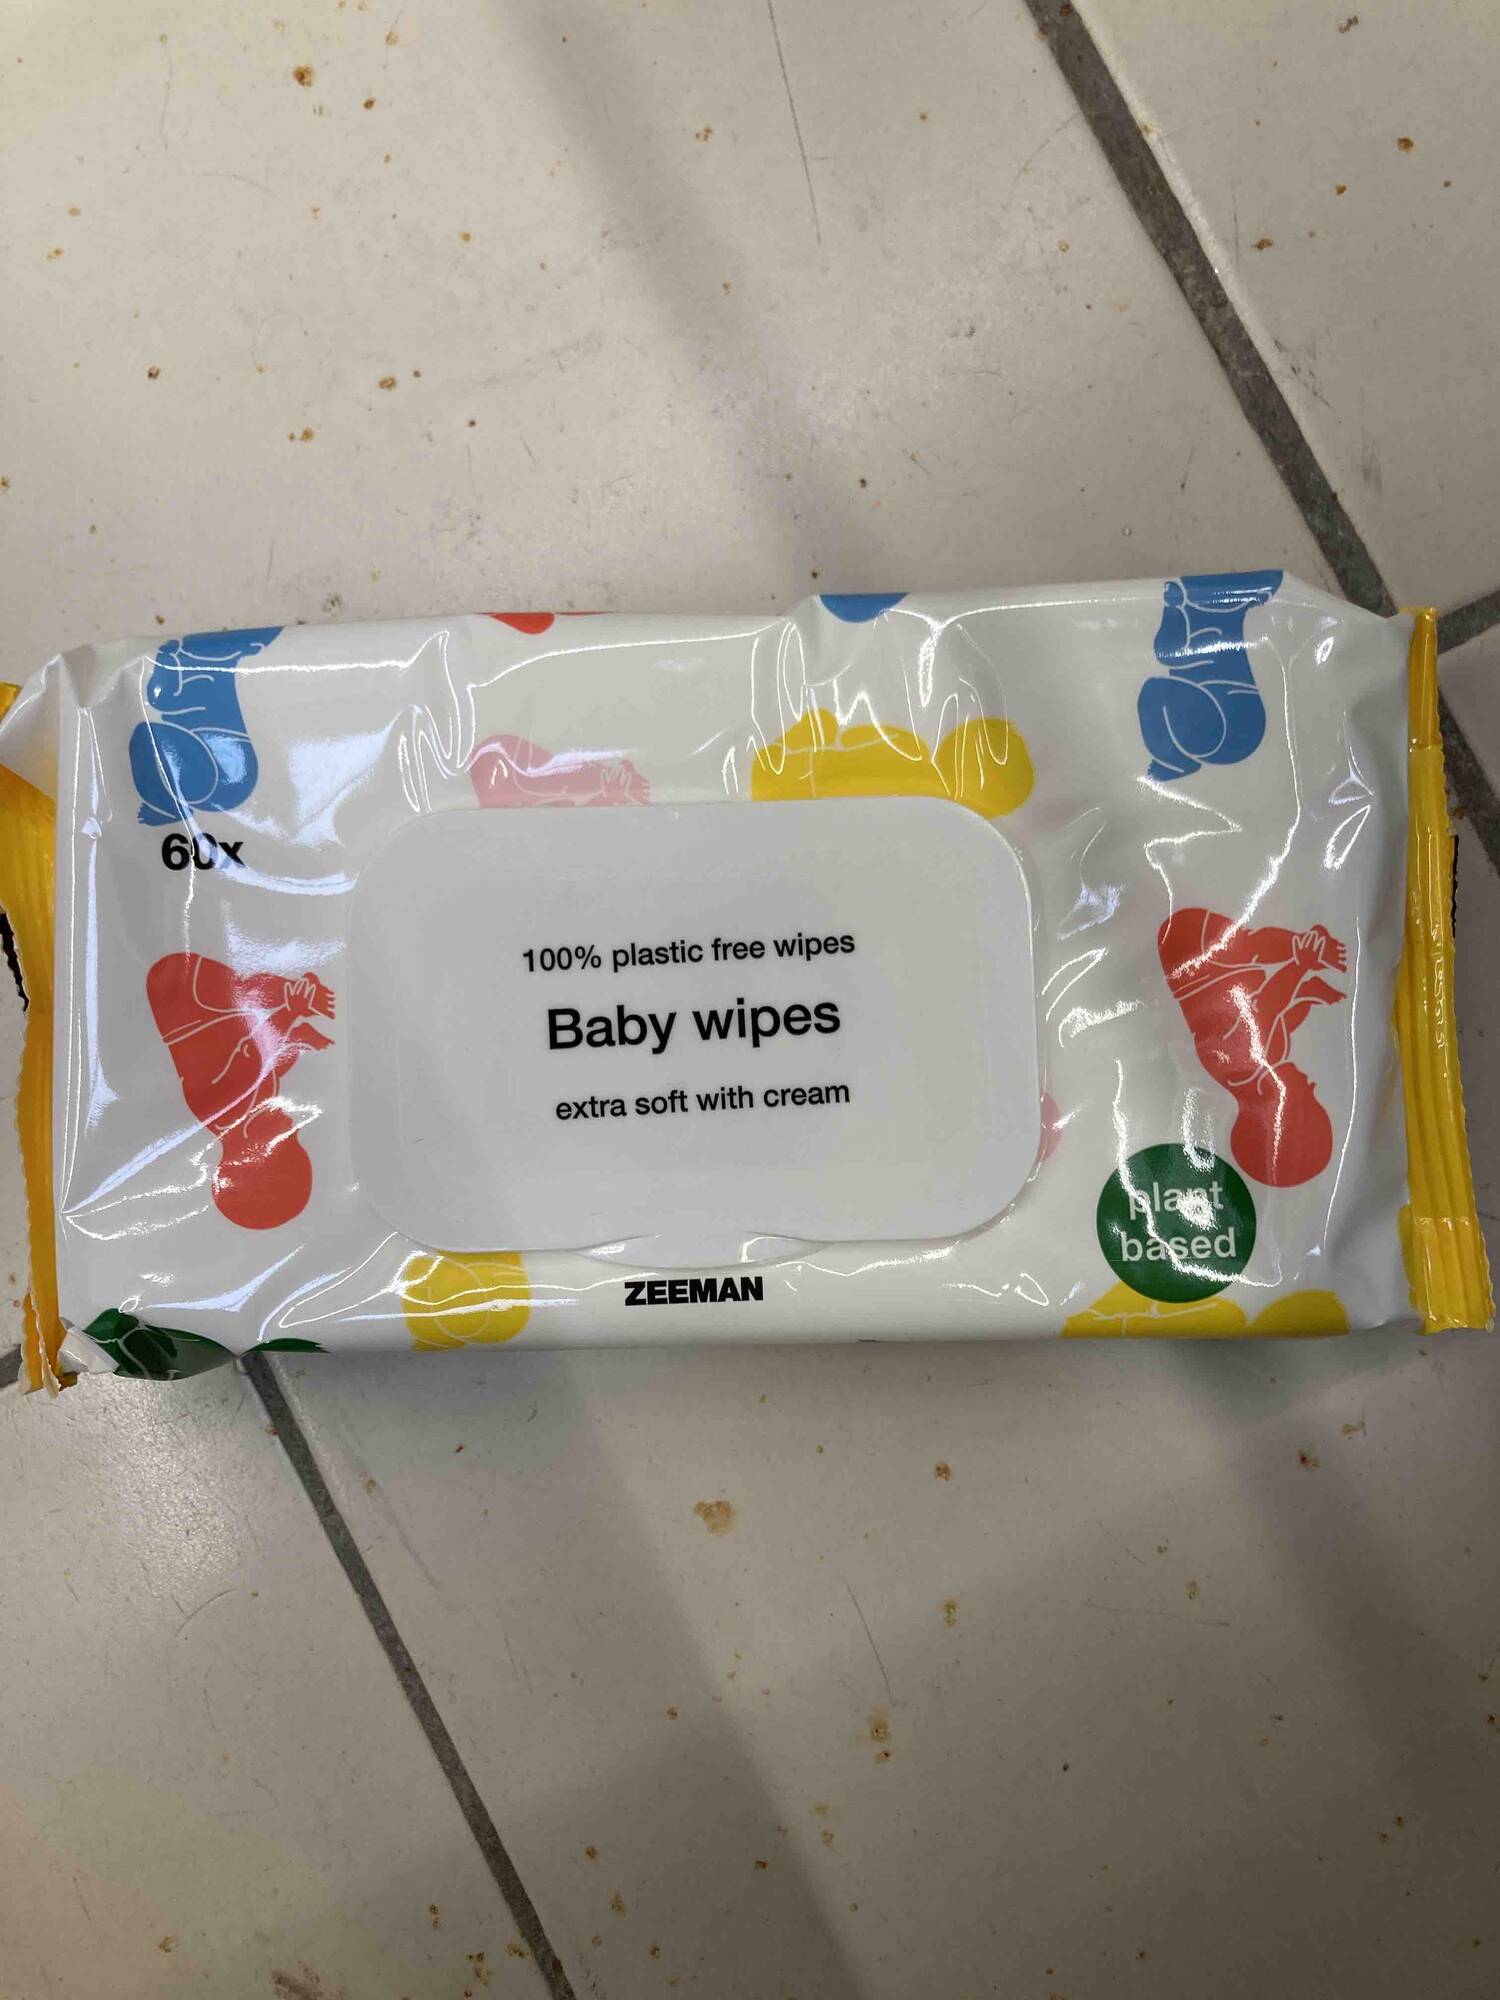 ZEEMAN - Baby wipes extra soft with cream